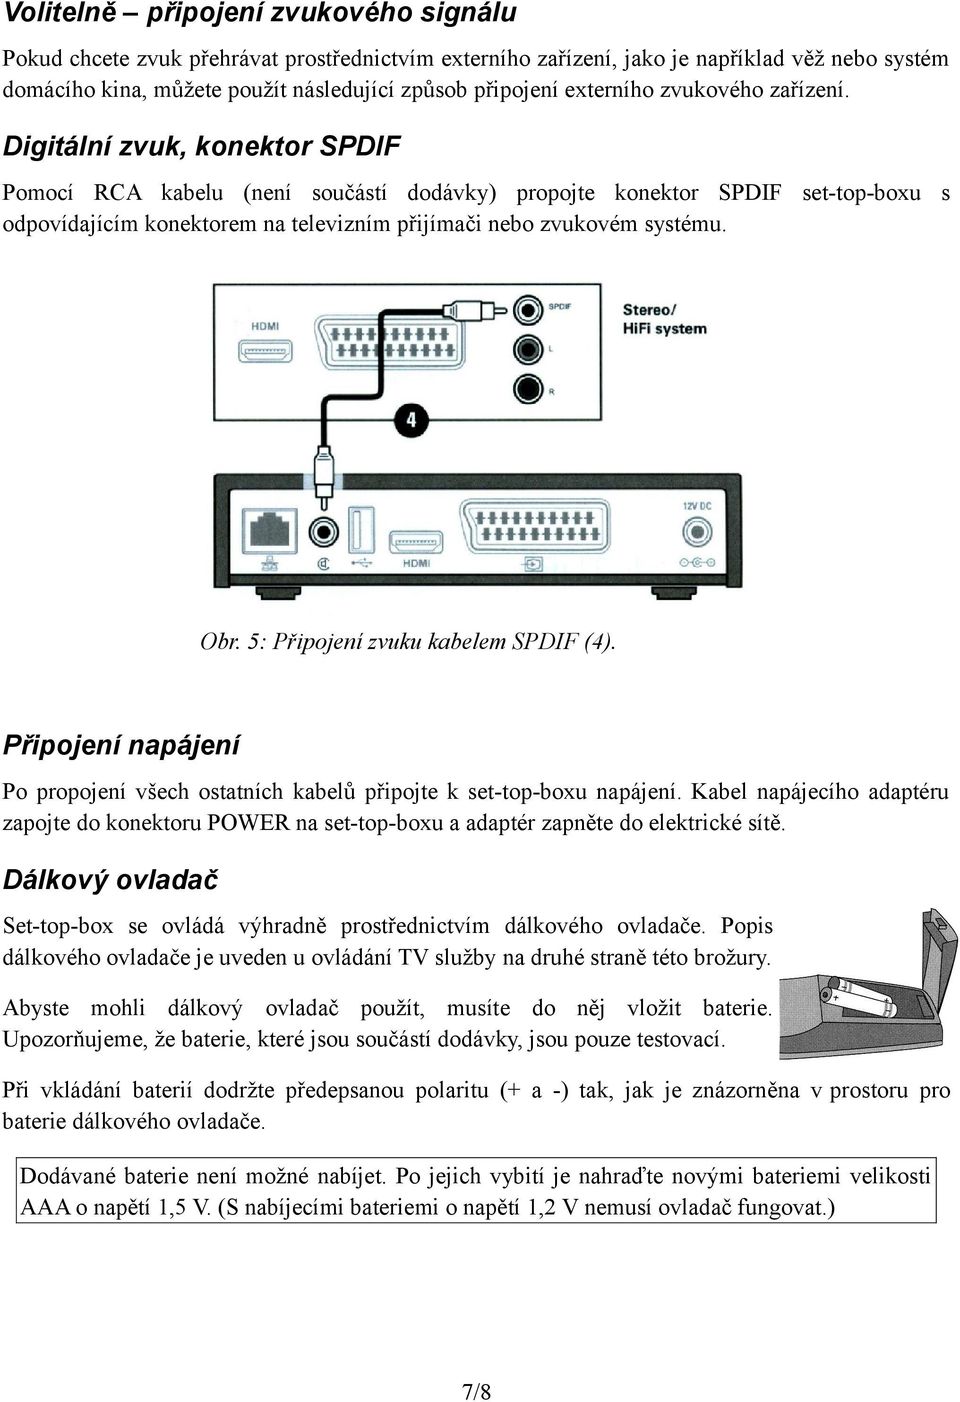 Digitální zvuk, konektor SPDIF Pomocí RCA kabelu (není součástí dodávky) propojte konektor SPDIF set-top-boxu s odpovídajícím konektorem na televizním přijímači nebo zvukovém systému. Obr.